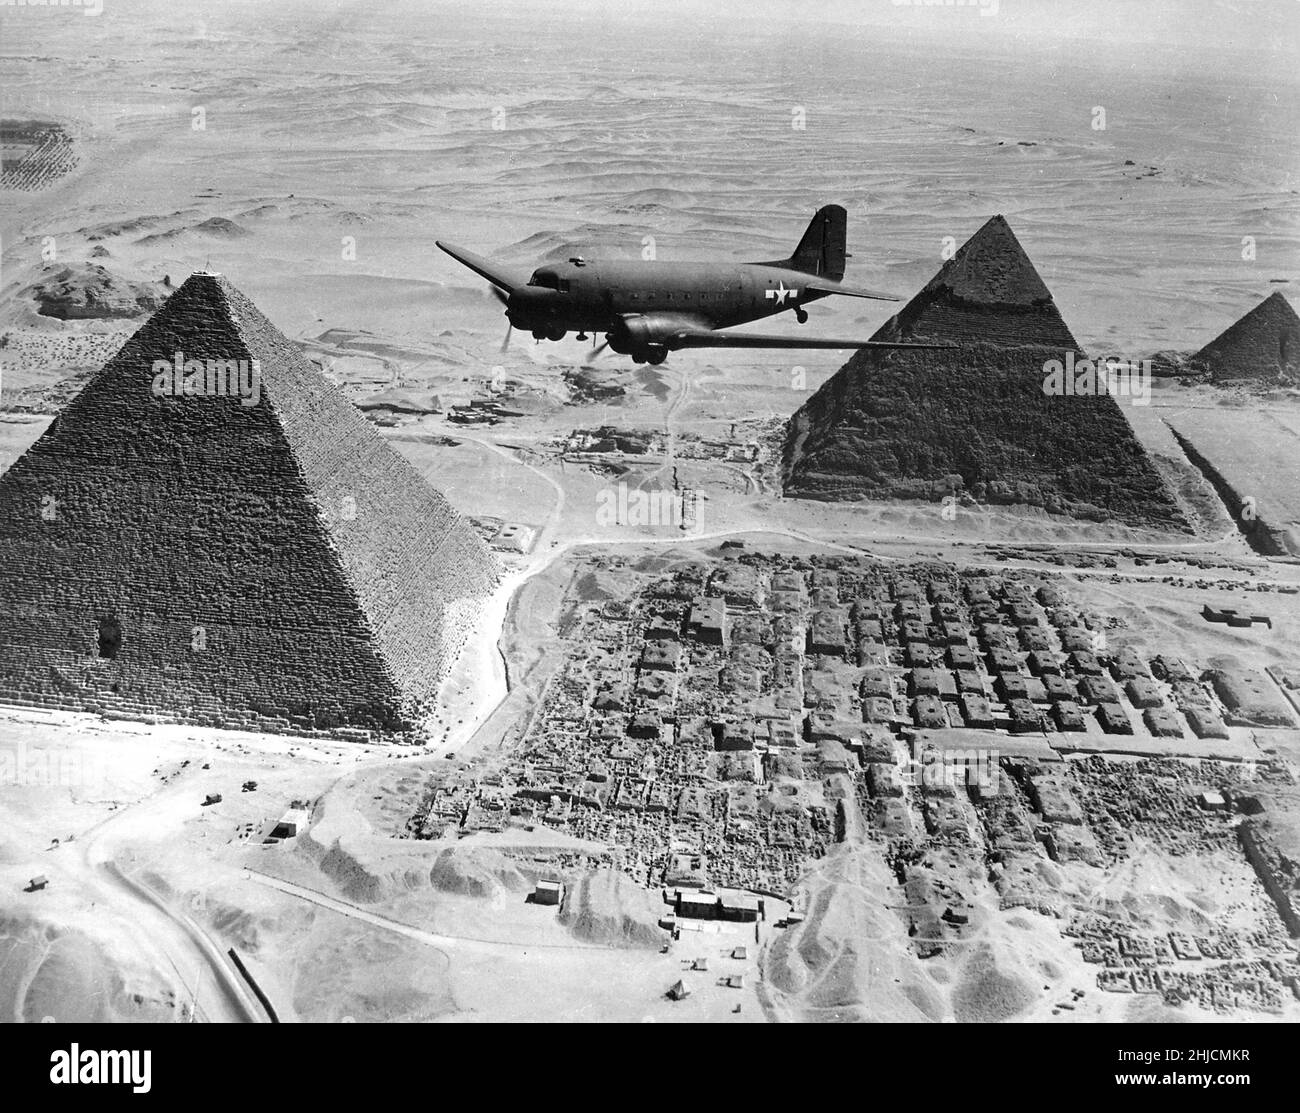 Un Commandement du transport aérien de la Force aérienne des États-Unis Douglas C-47 Skytrain survolant les pyramides de Gizeh en Égypte, pendant la Seconde Guerre mondiale, 1943.Chargé de fournitures et de matériaux de guerre urgents, cet avion était l'une des flottes qui volait des États-Unis à travers l'Atlantique et l'Afrique vers des zones de bataille stratégiques. Banque D'Images